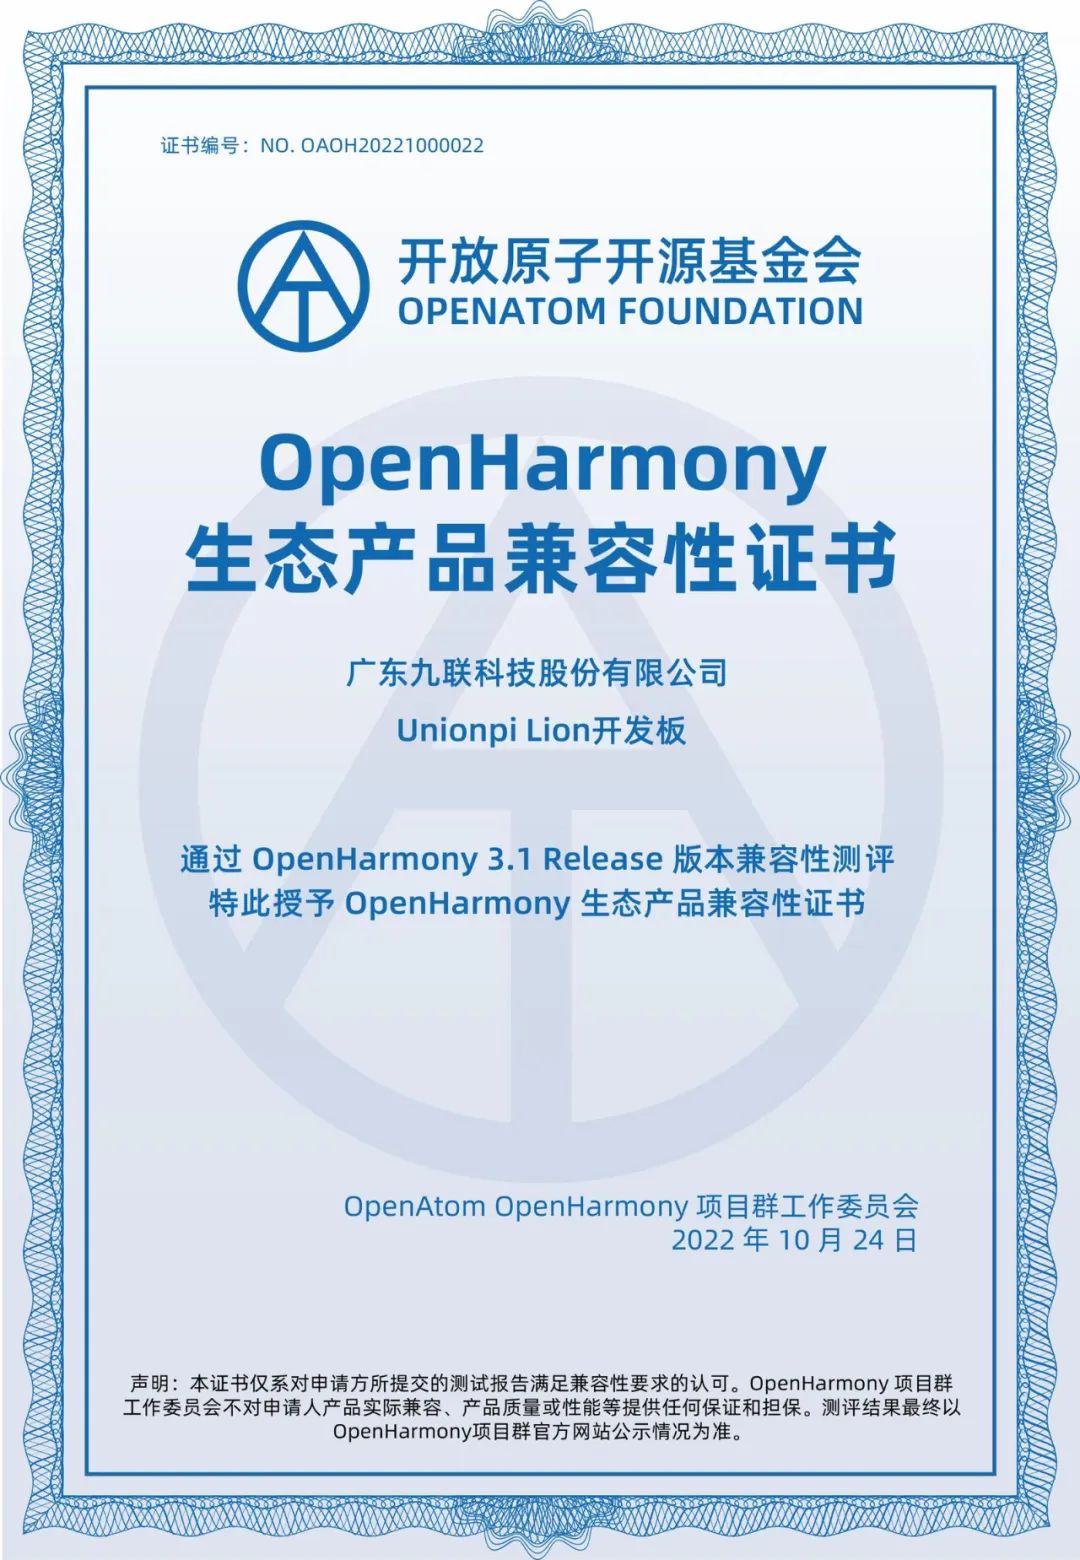 九联科技Unionpi Lion开发板通过OpenHarmony兼容性测评w1.jpg